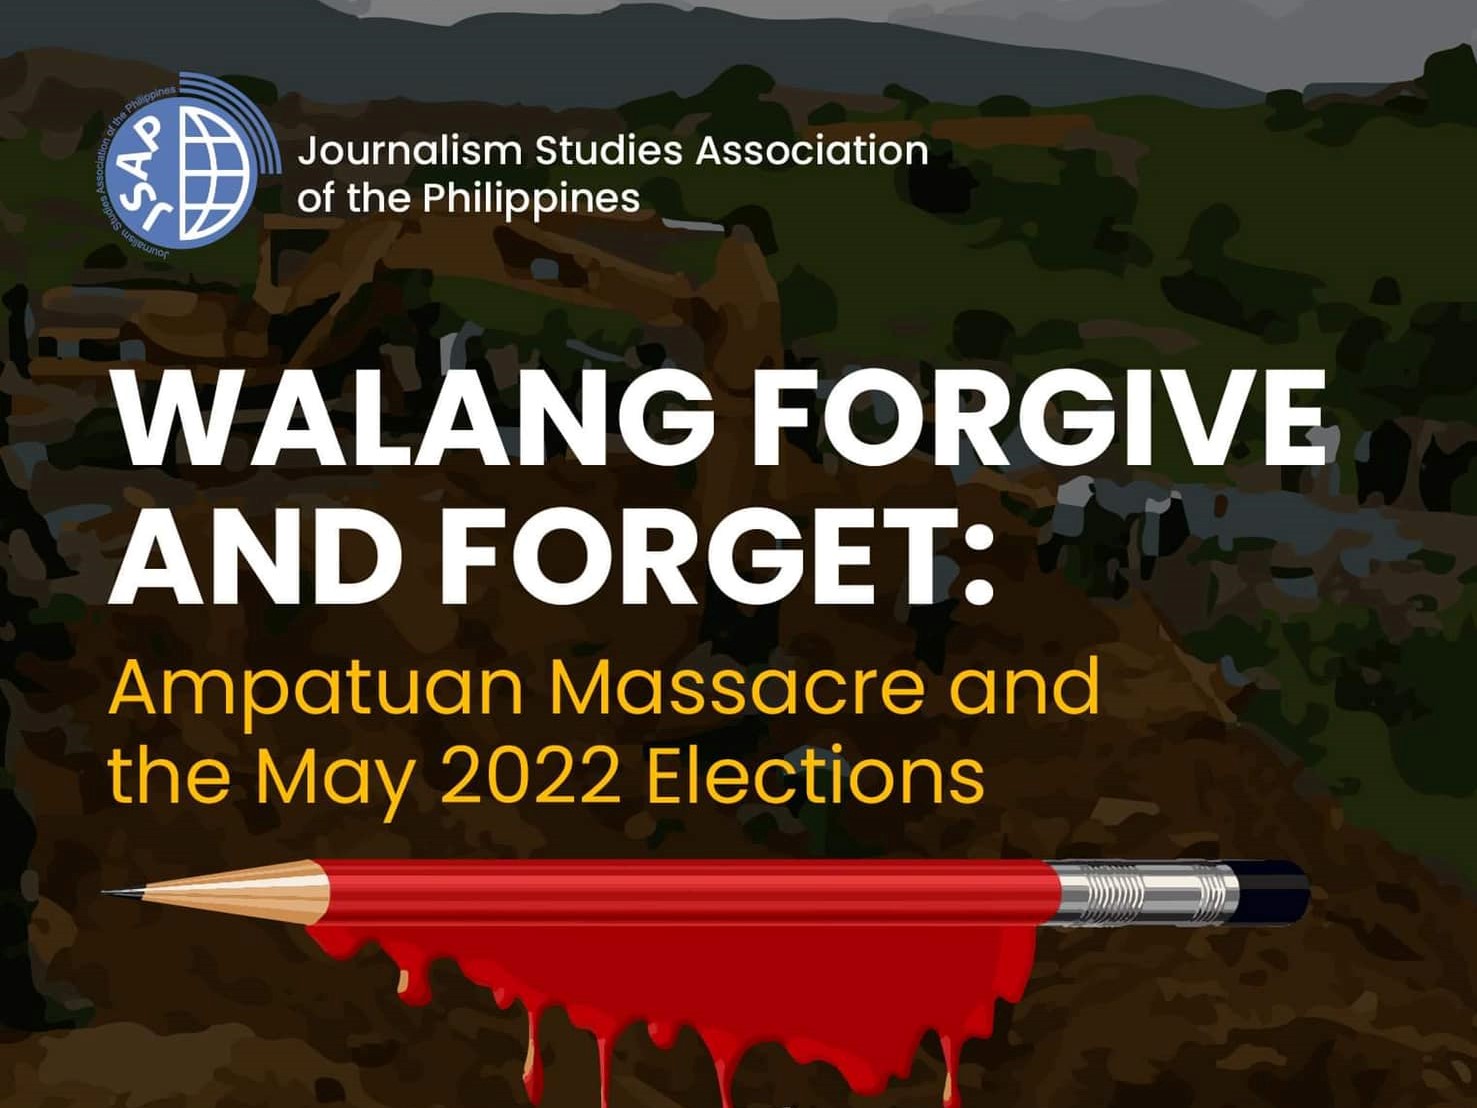 WALANG FORGIVE AND FORGET: Mahigit isang dekadang anibersaryo ng Maguindanao Massacre, ginunita